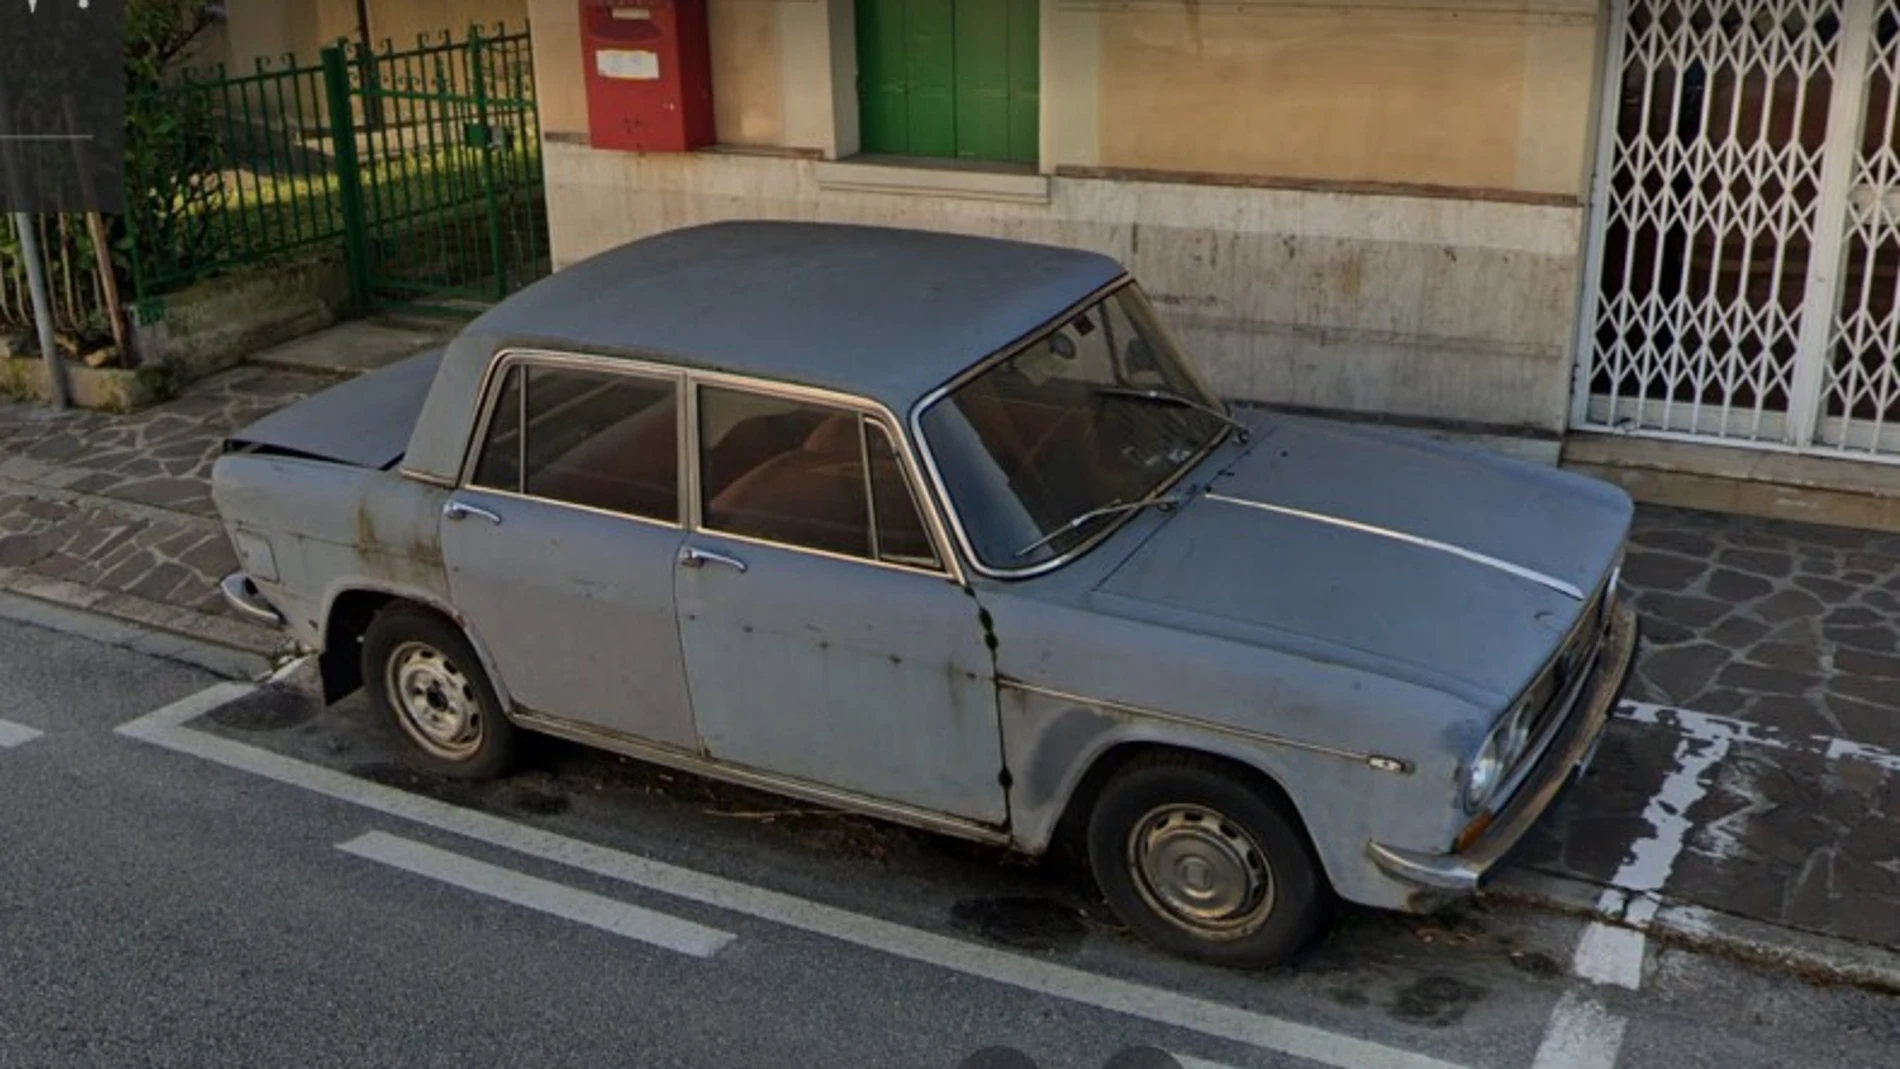 Declaran monumento un coche que llevaba 47 años aparcado en el mismo sitio en Italia